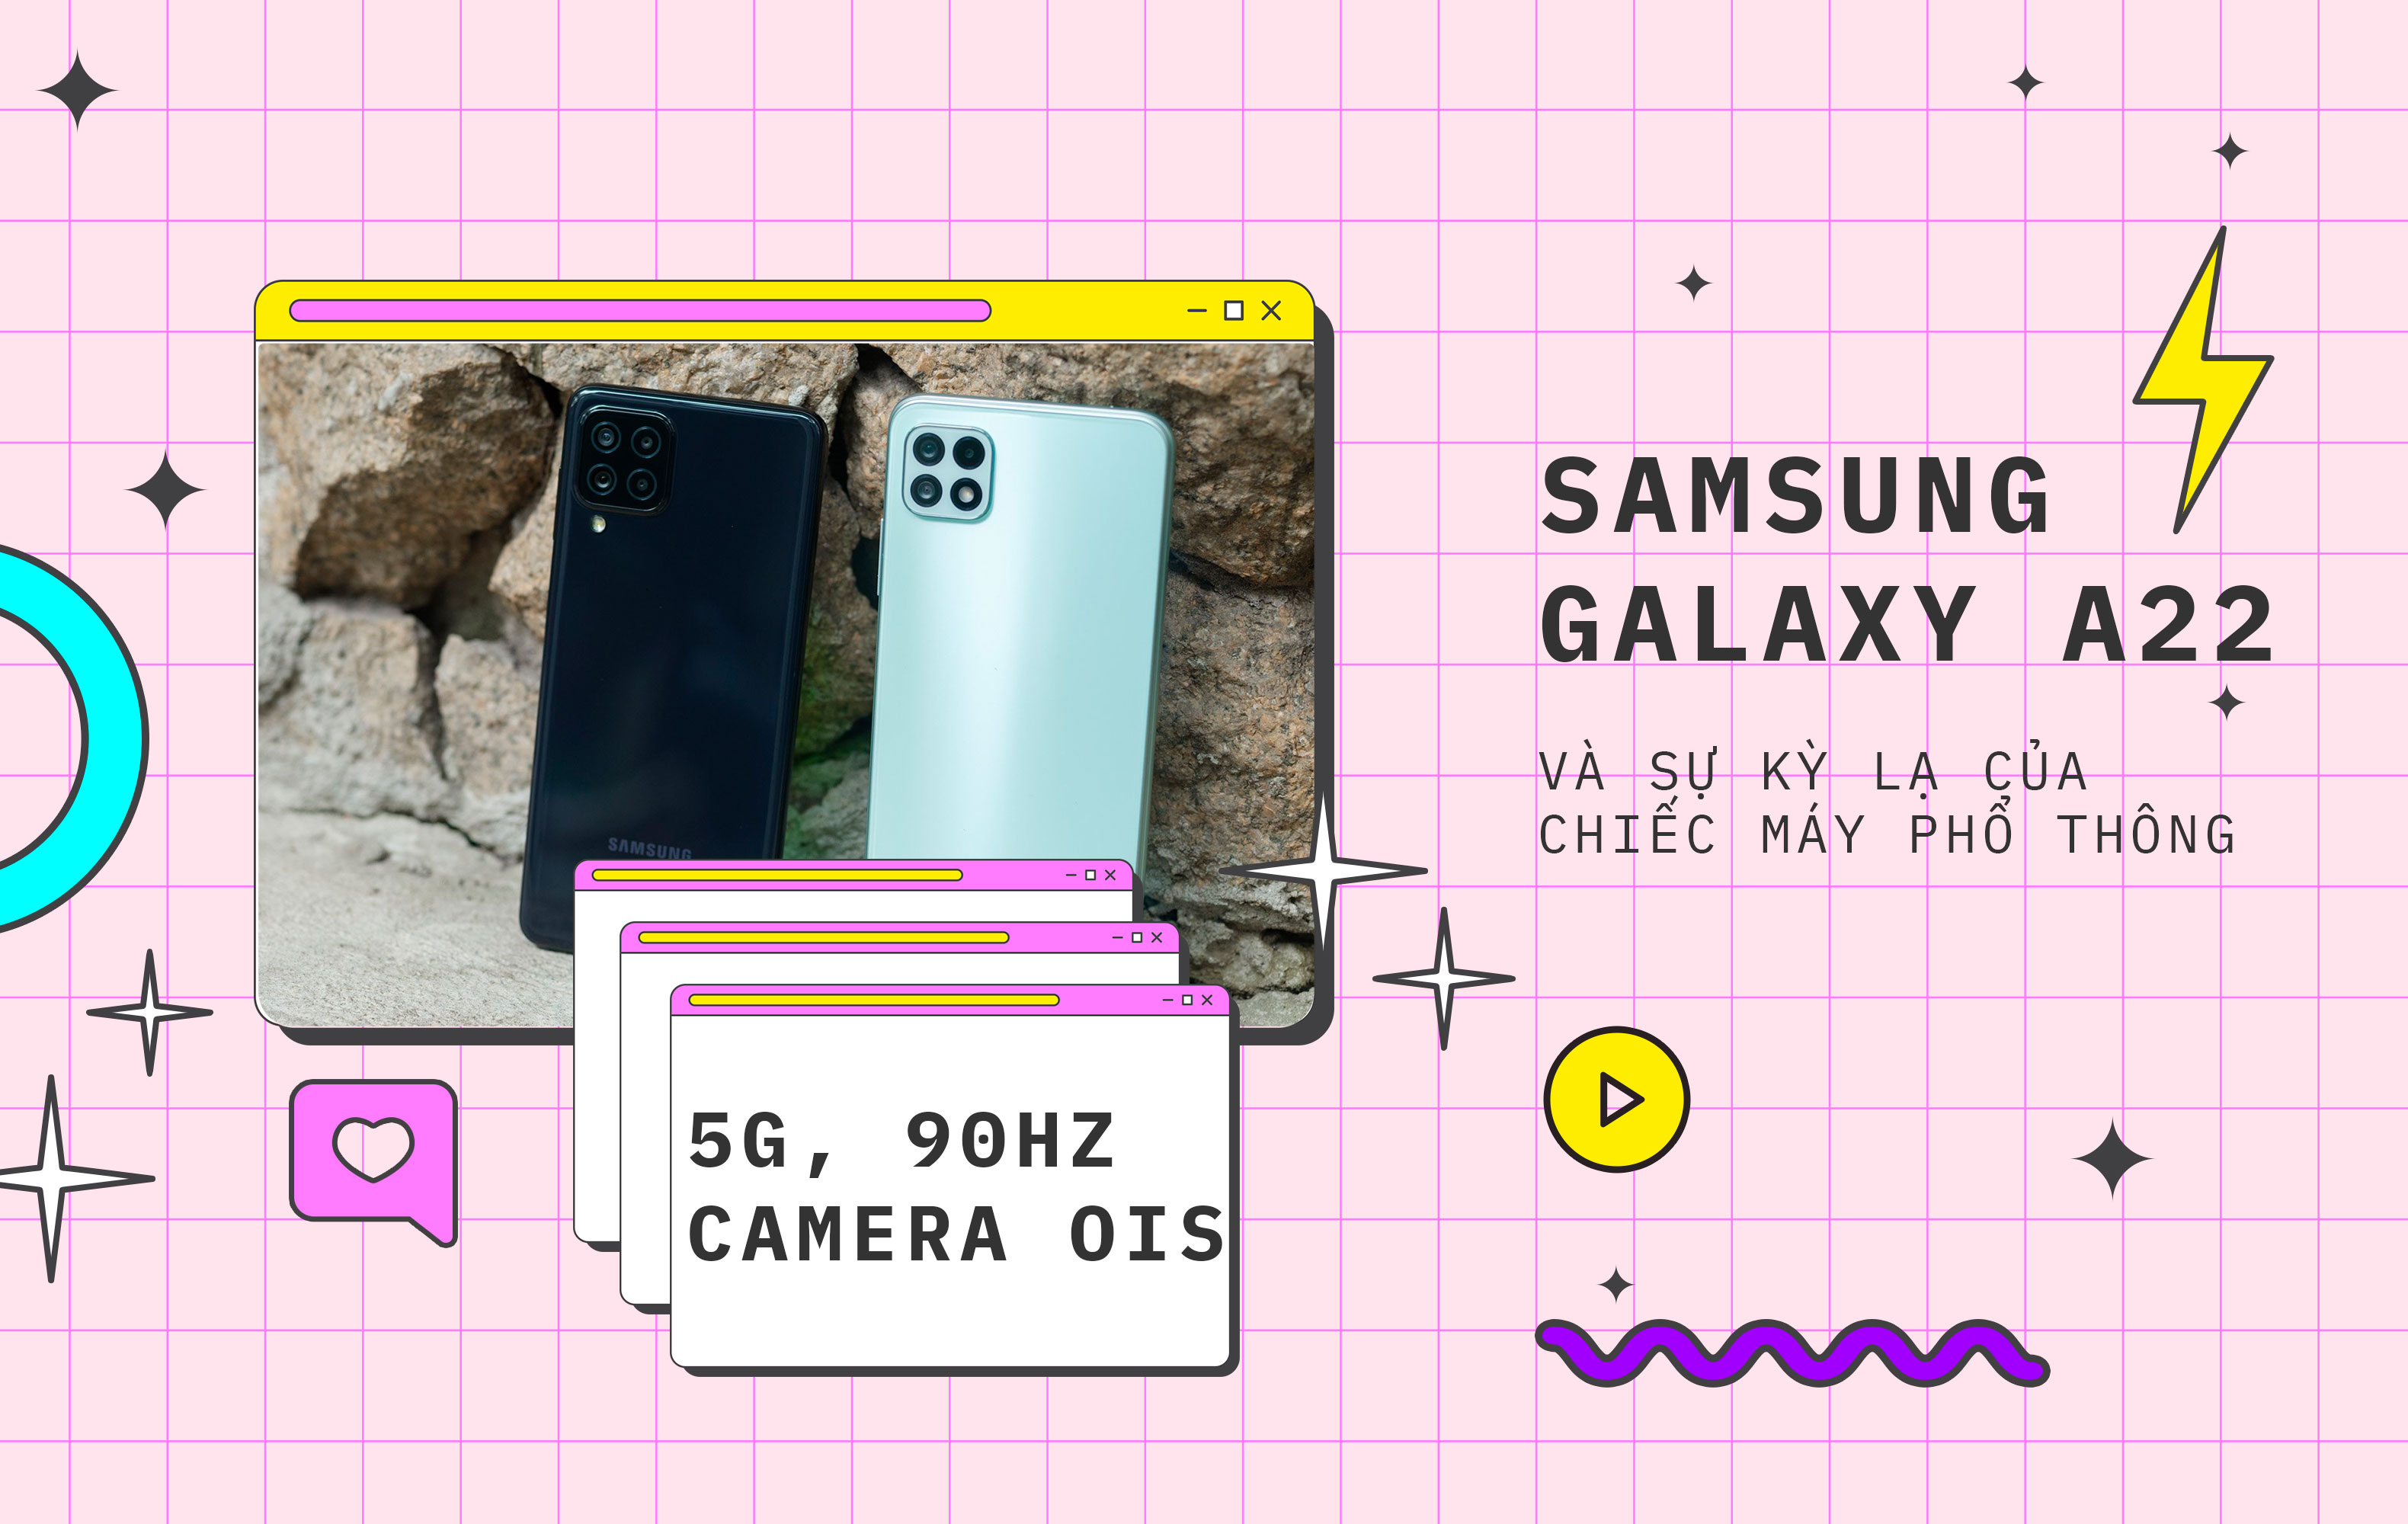 #Deeptalk: Samsung Galaxy A22 và sự kỳ lạ của chiếc máy phổ thông